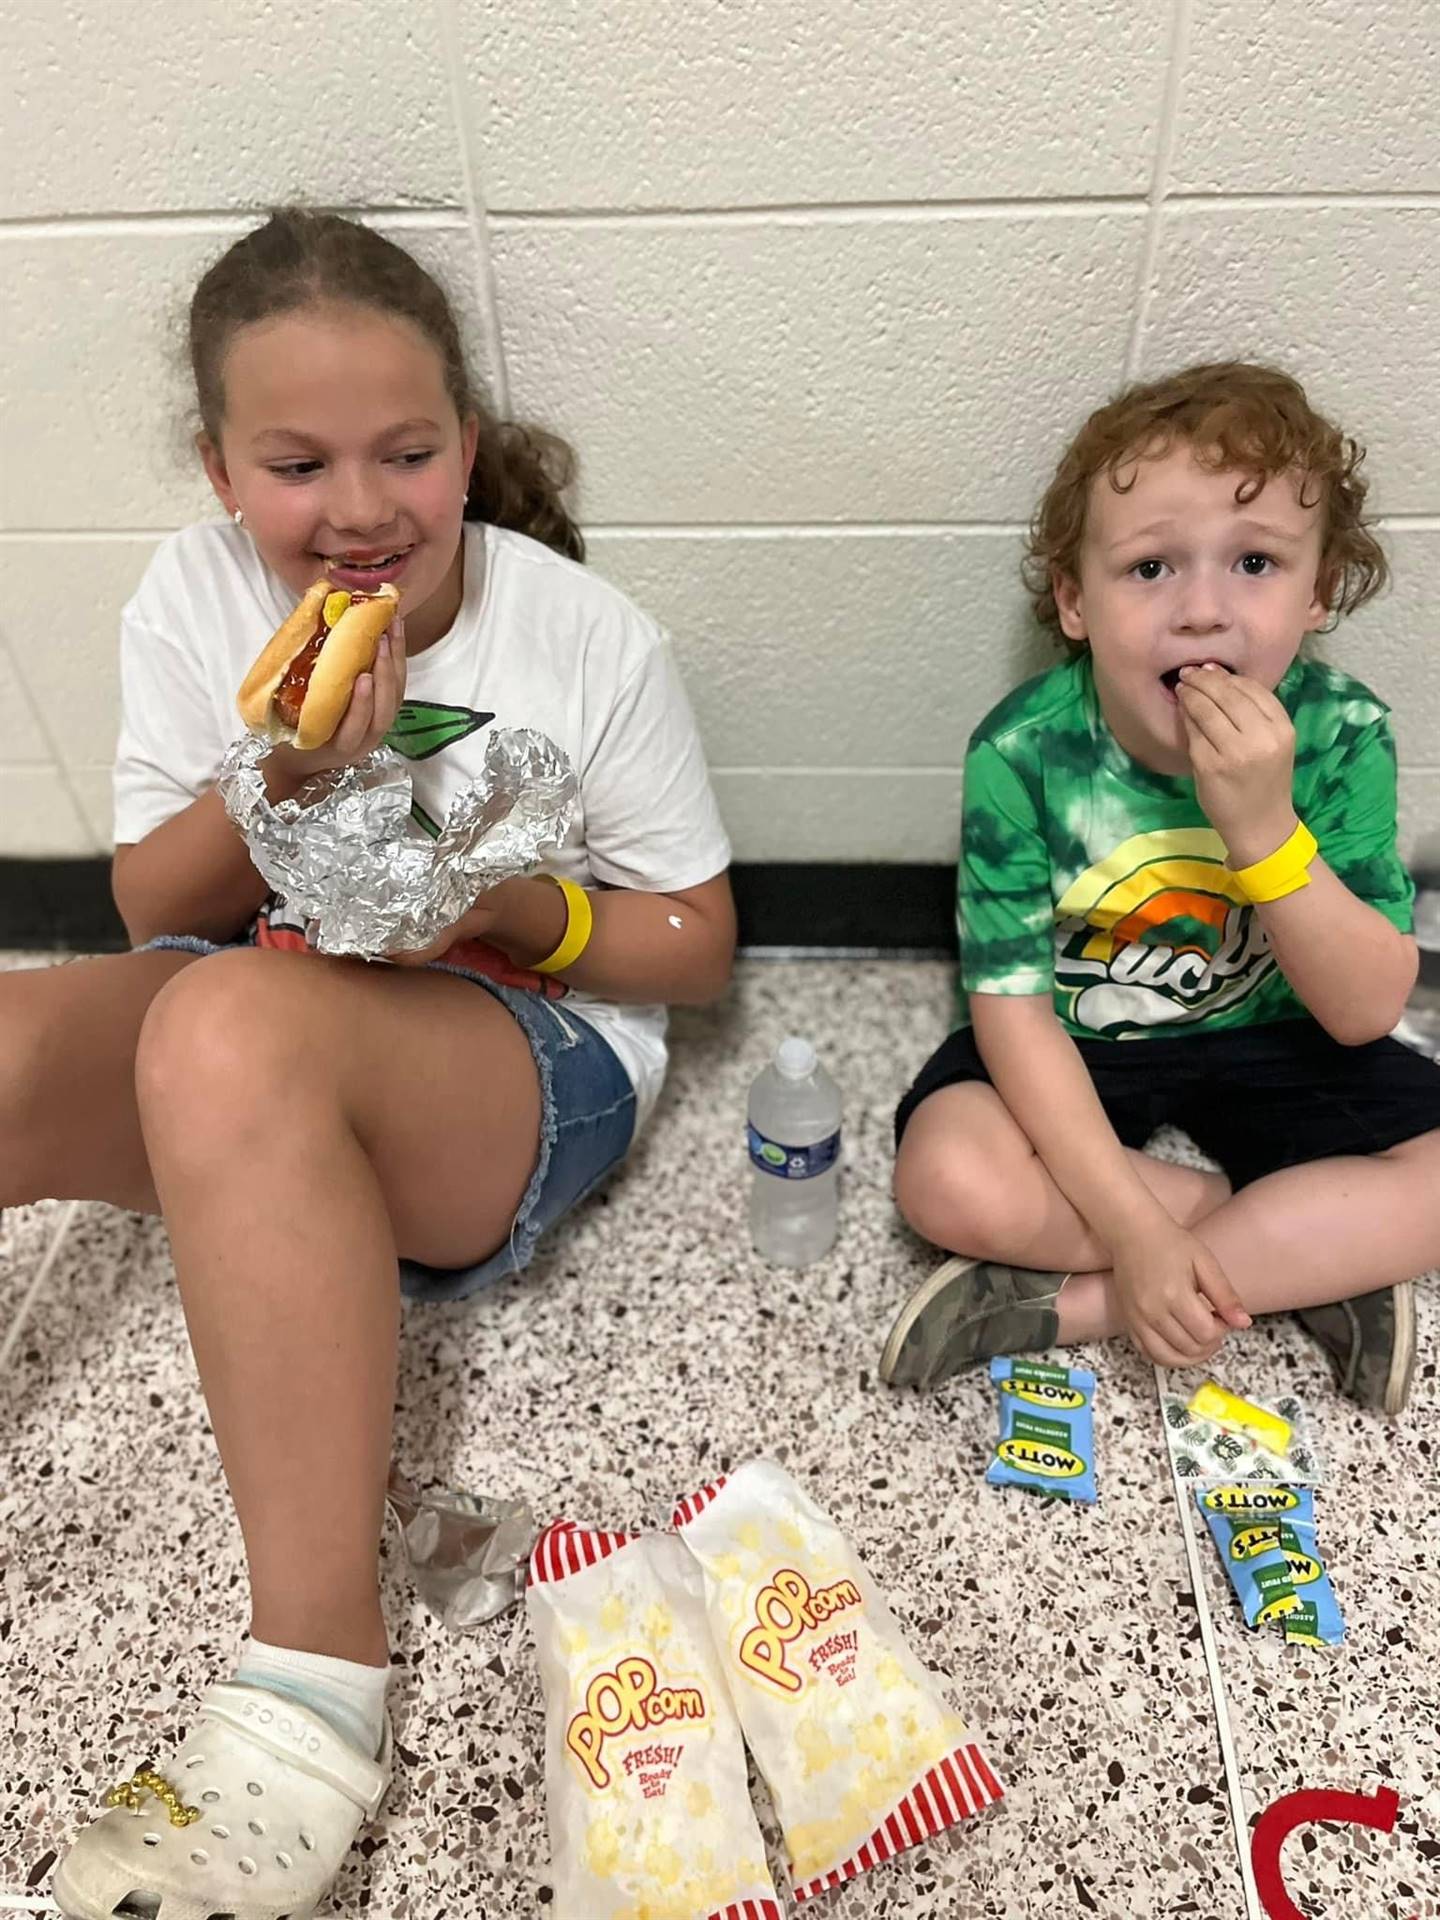 Children eating snacks